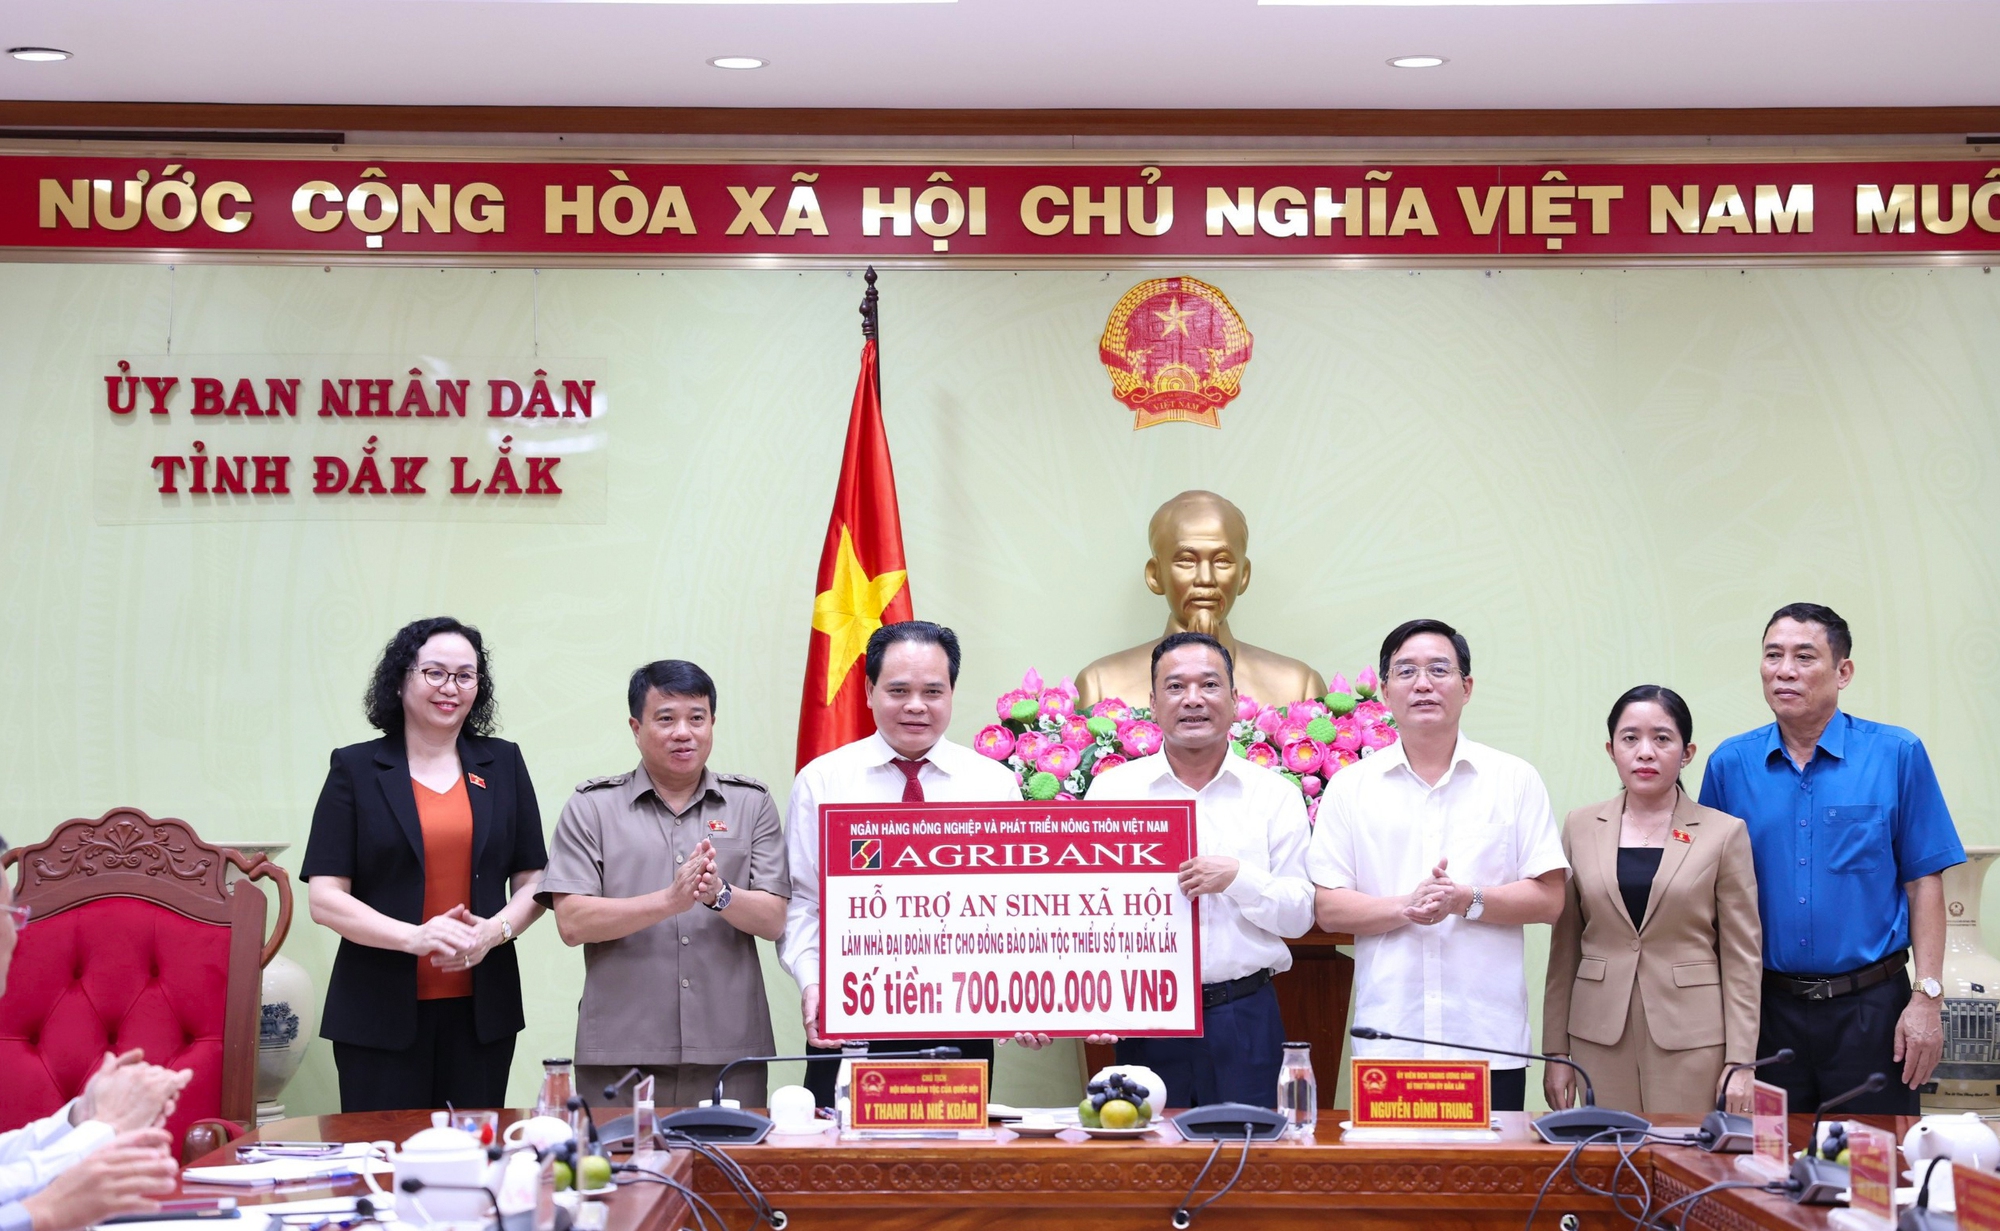 Agribank: Hỗ trợ 1,2 tỷ đồng thực hiện công tác an sinh xã hội tại huyện Cư Kuin và tỉnh Đắk Lắk. - Ảnh 1.